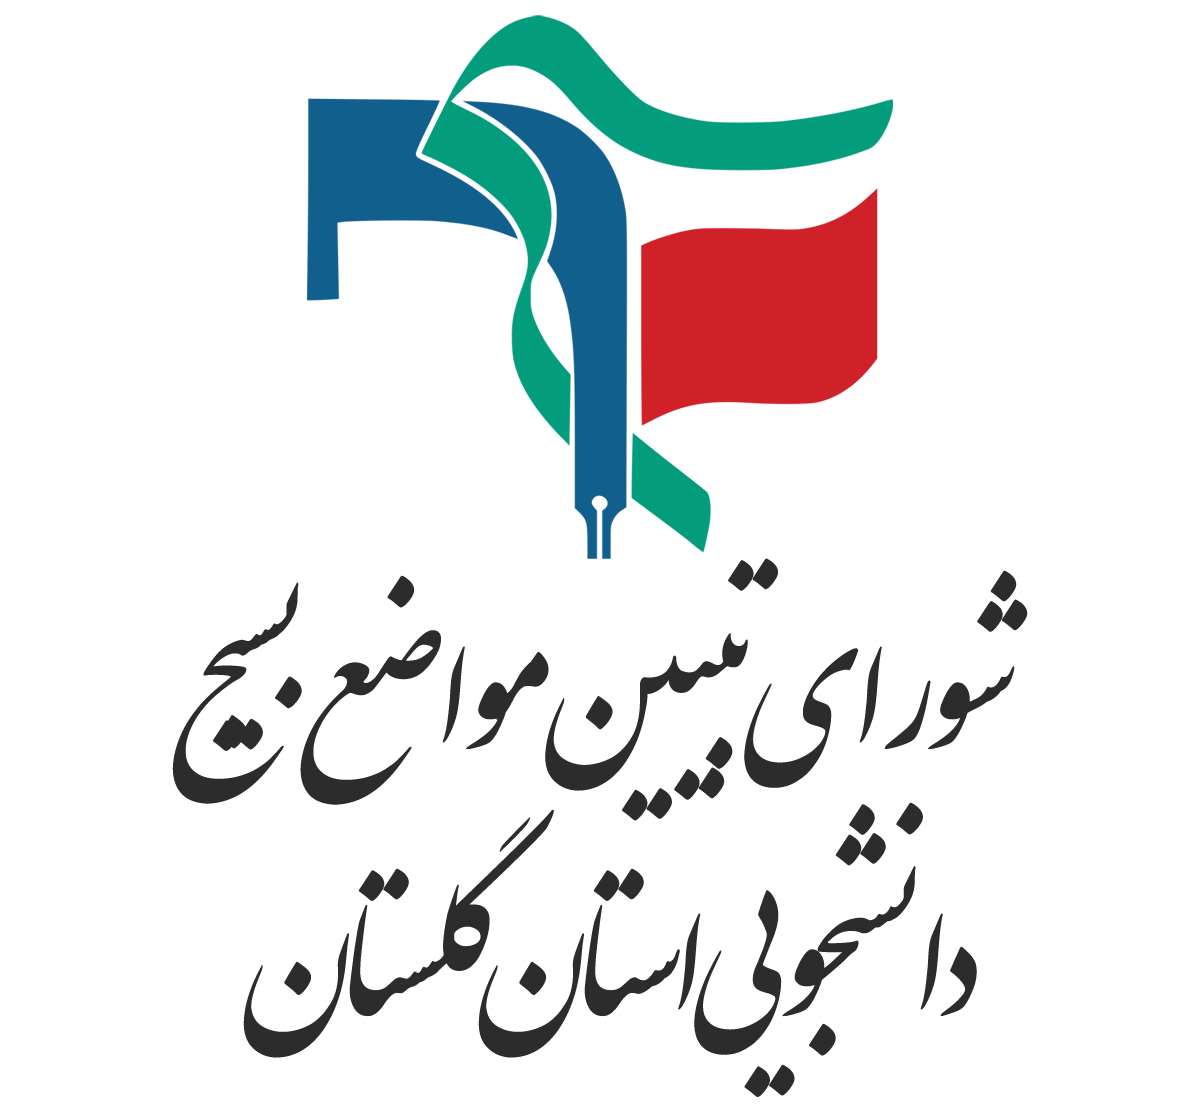 شورای تبیین مواضع بسیج دانشجویی استان گلستان به مناسبت هفته بسیج بیانیه صادر کرد